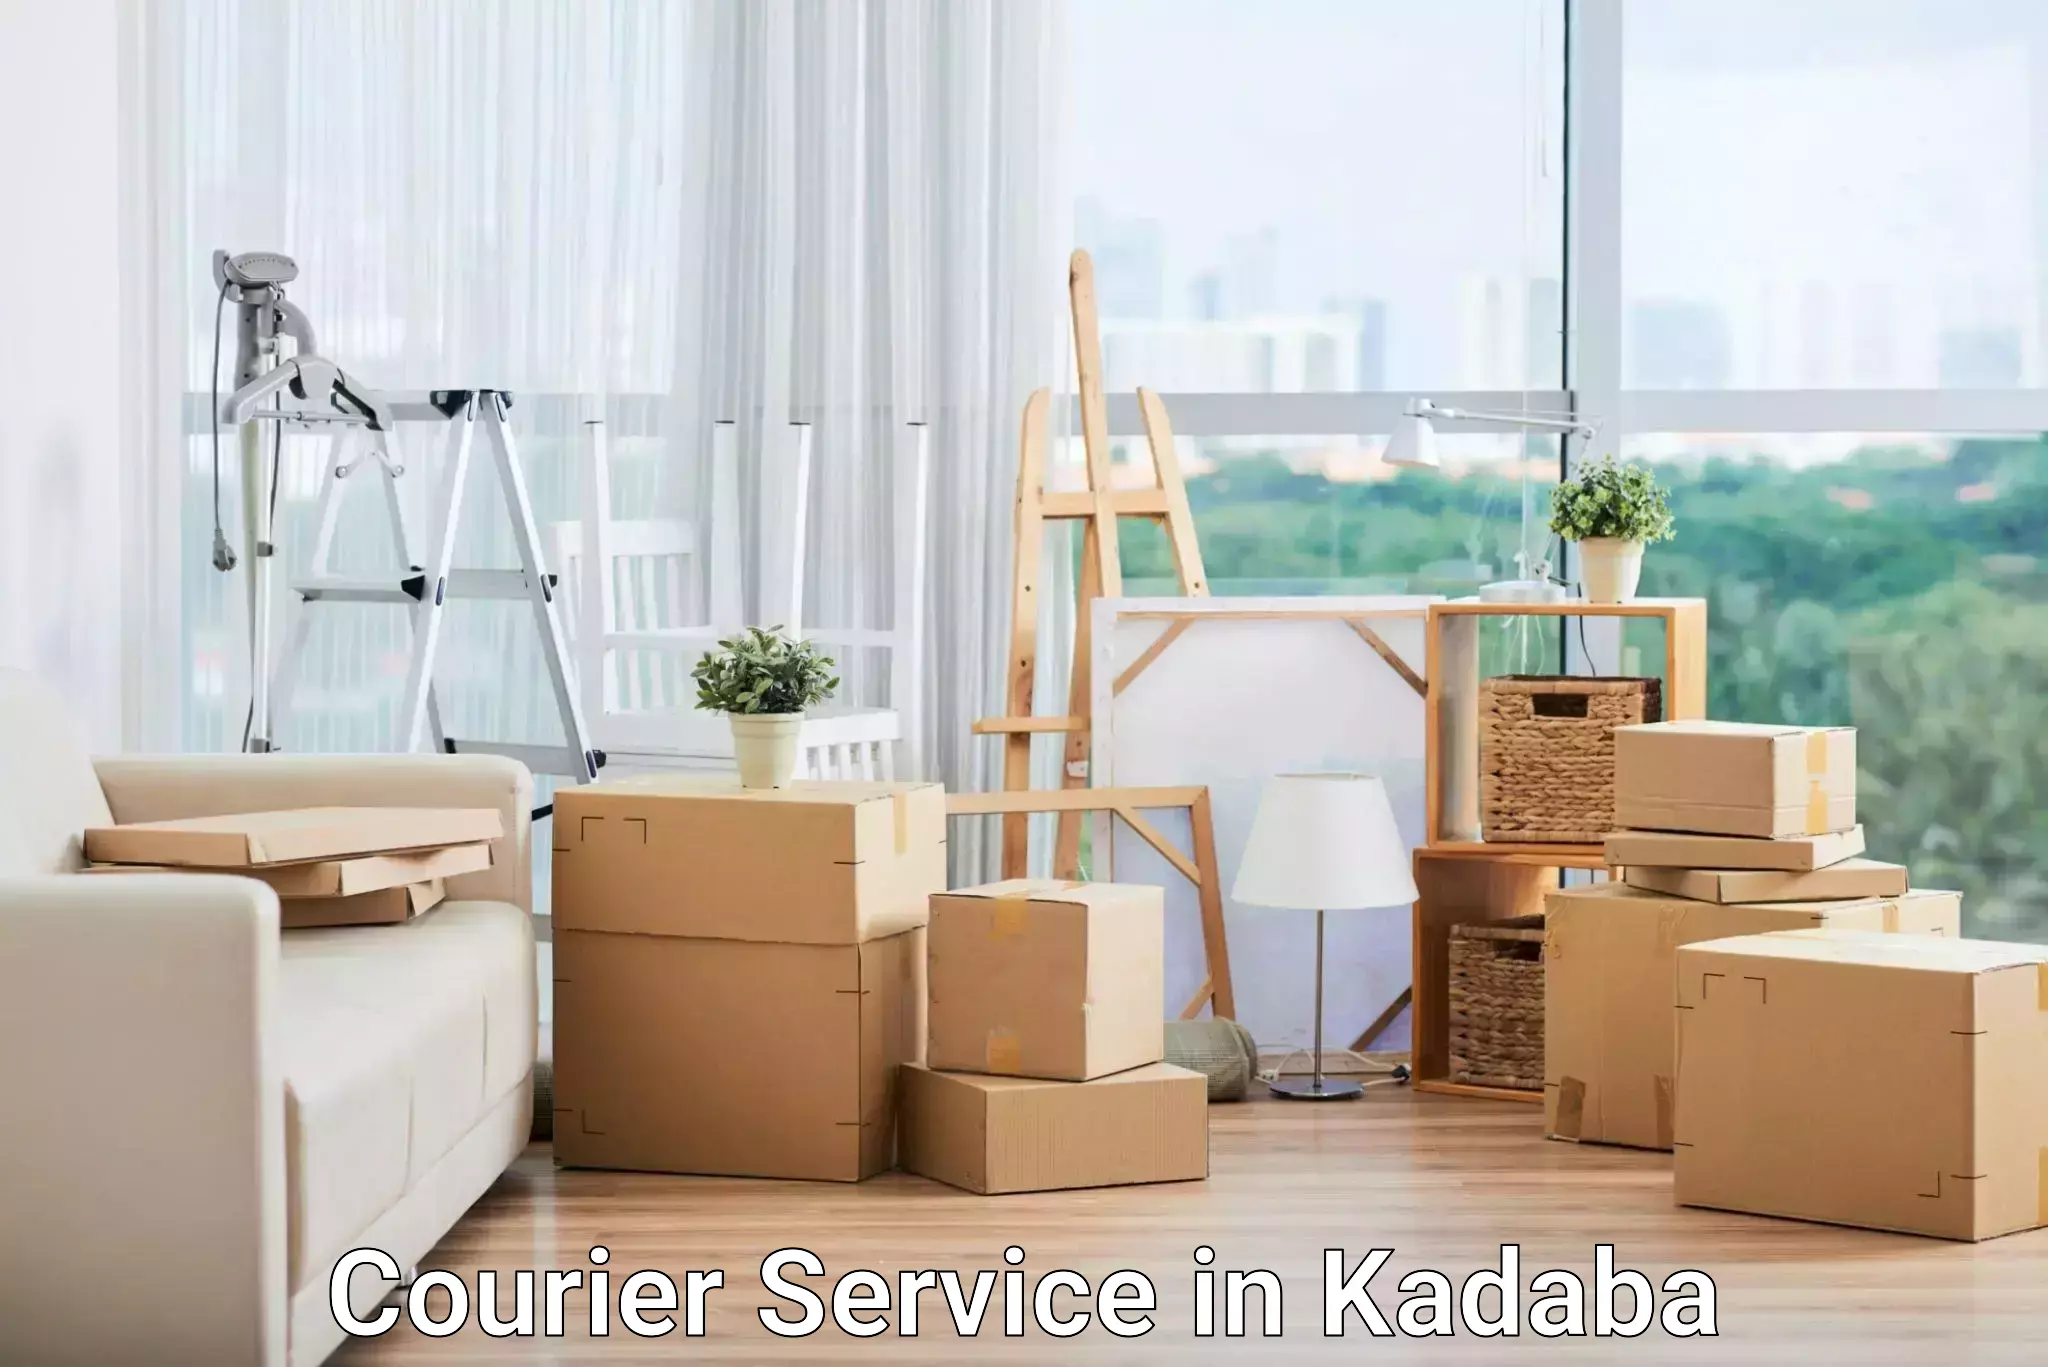 Nationwide shipping capabilities in Kadaba